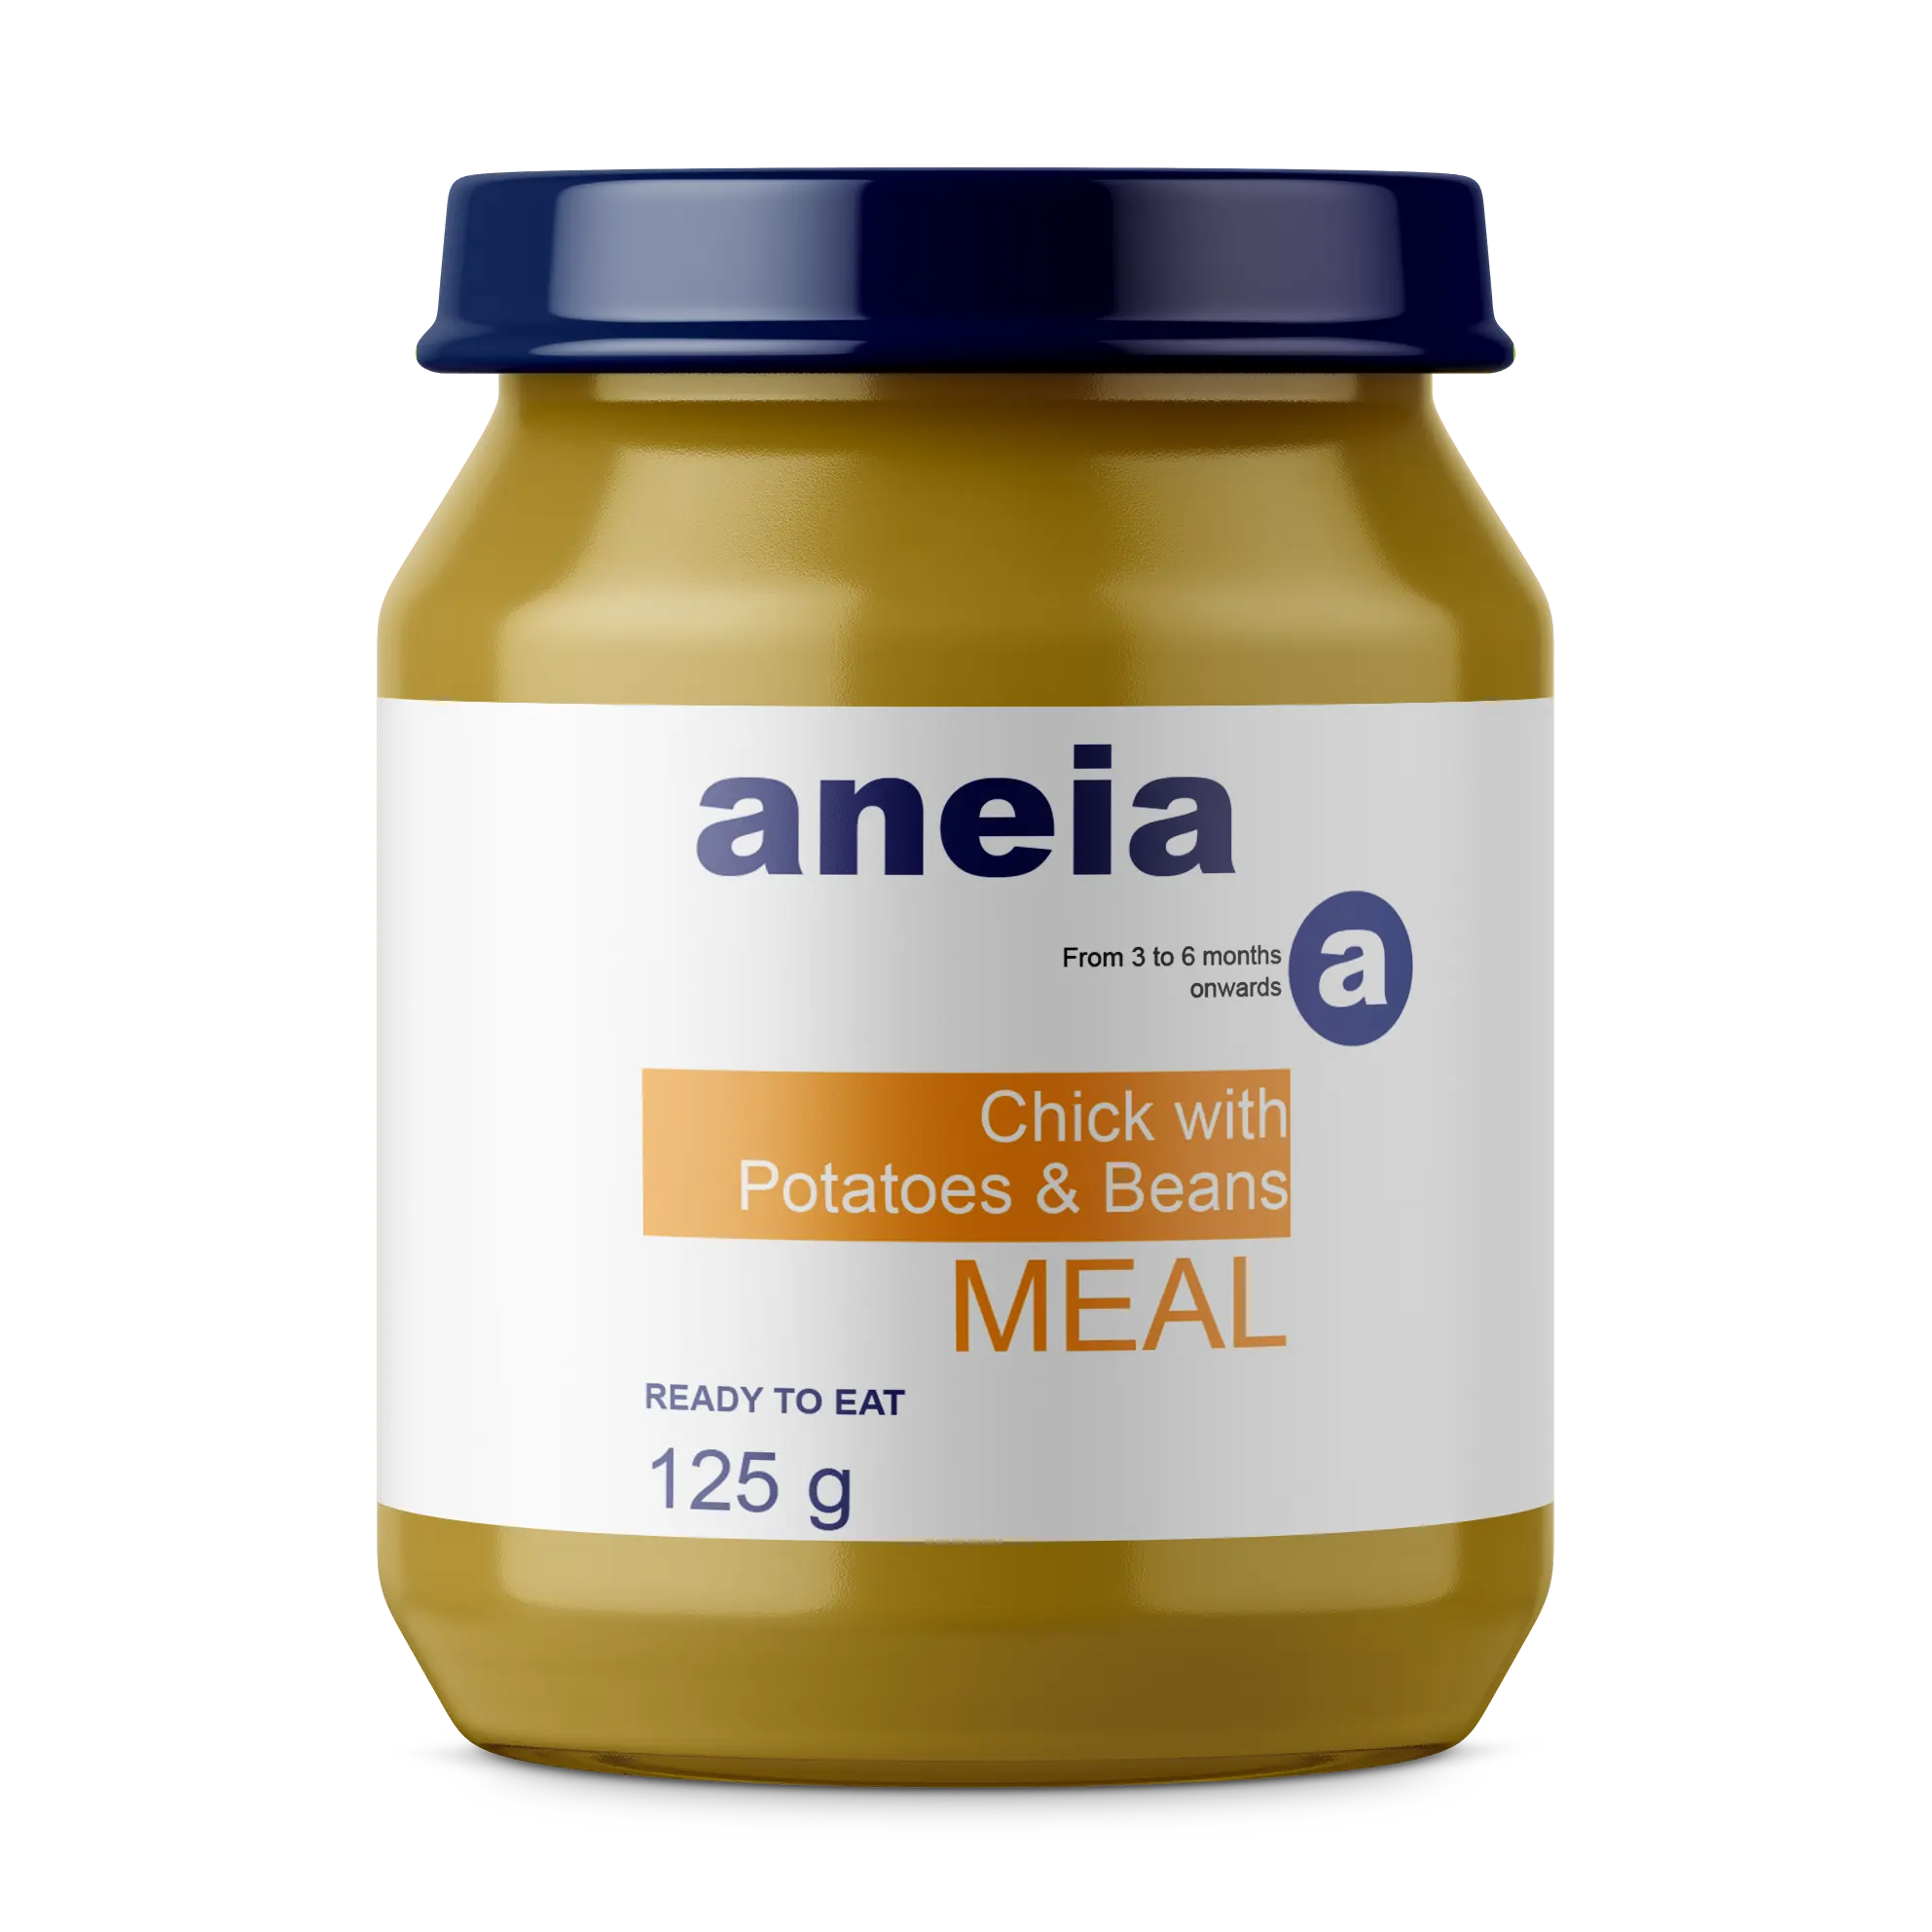 Aneia 아기 퓌레 음식 생선 감자 콩 먹을 준비 RTE 항아리 파우치 간식 식사 건강한 다이어트 식품 OEM OBM 개인 라벨